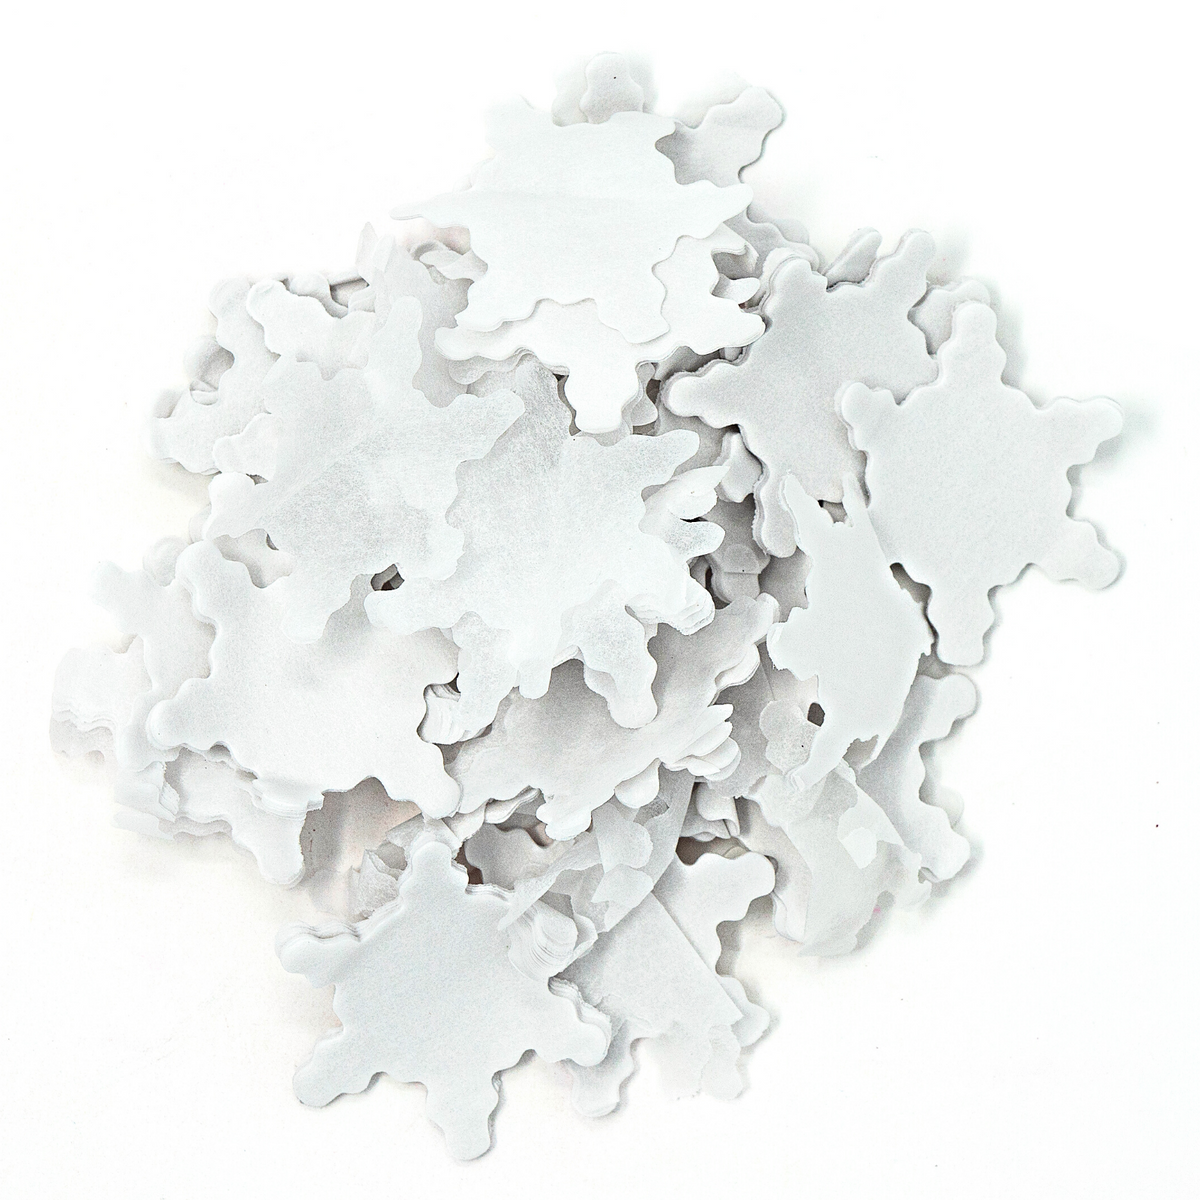 Confetti White Tissue per pound flameproof confetti rectangular Paper  confetti